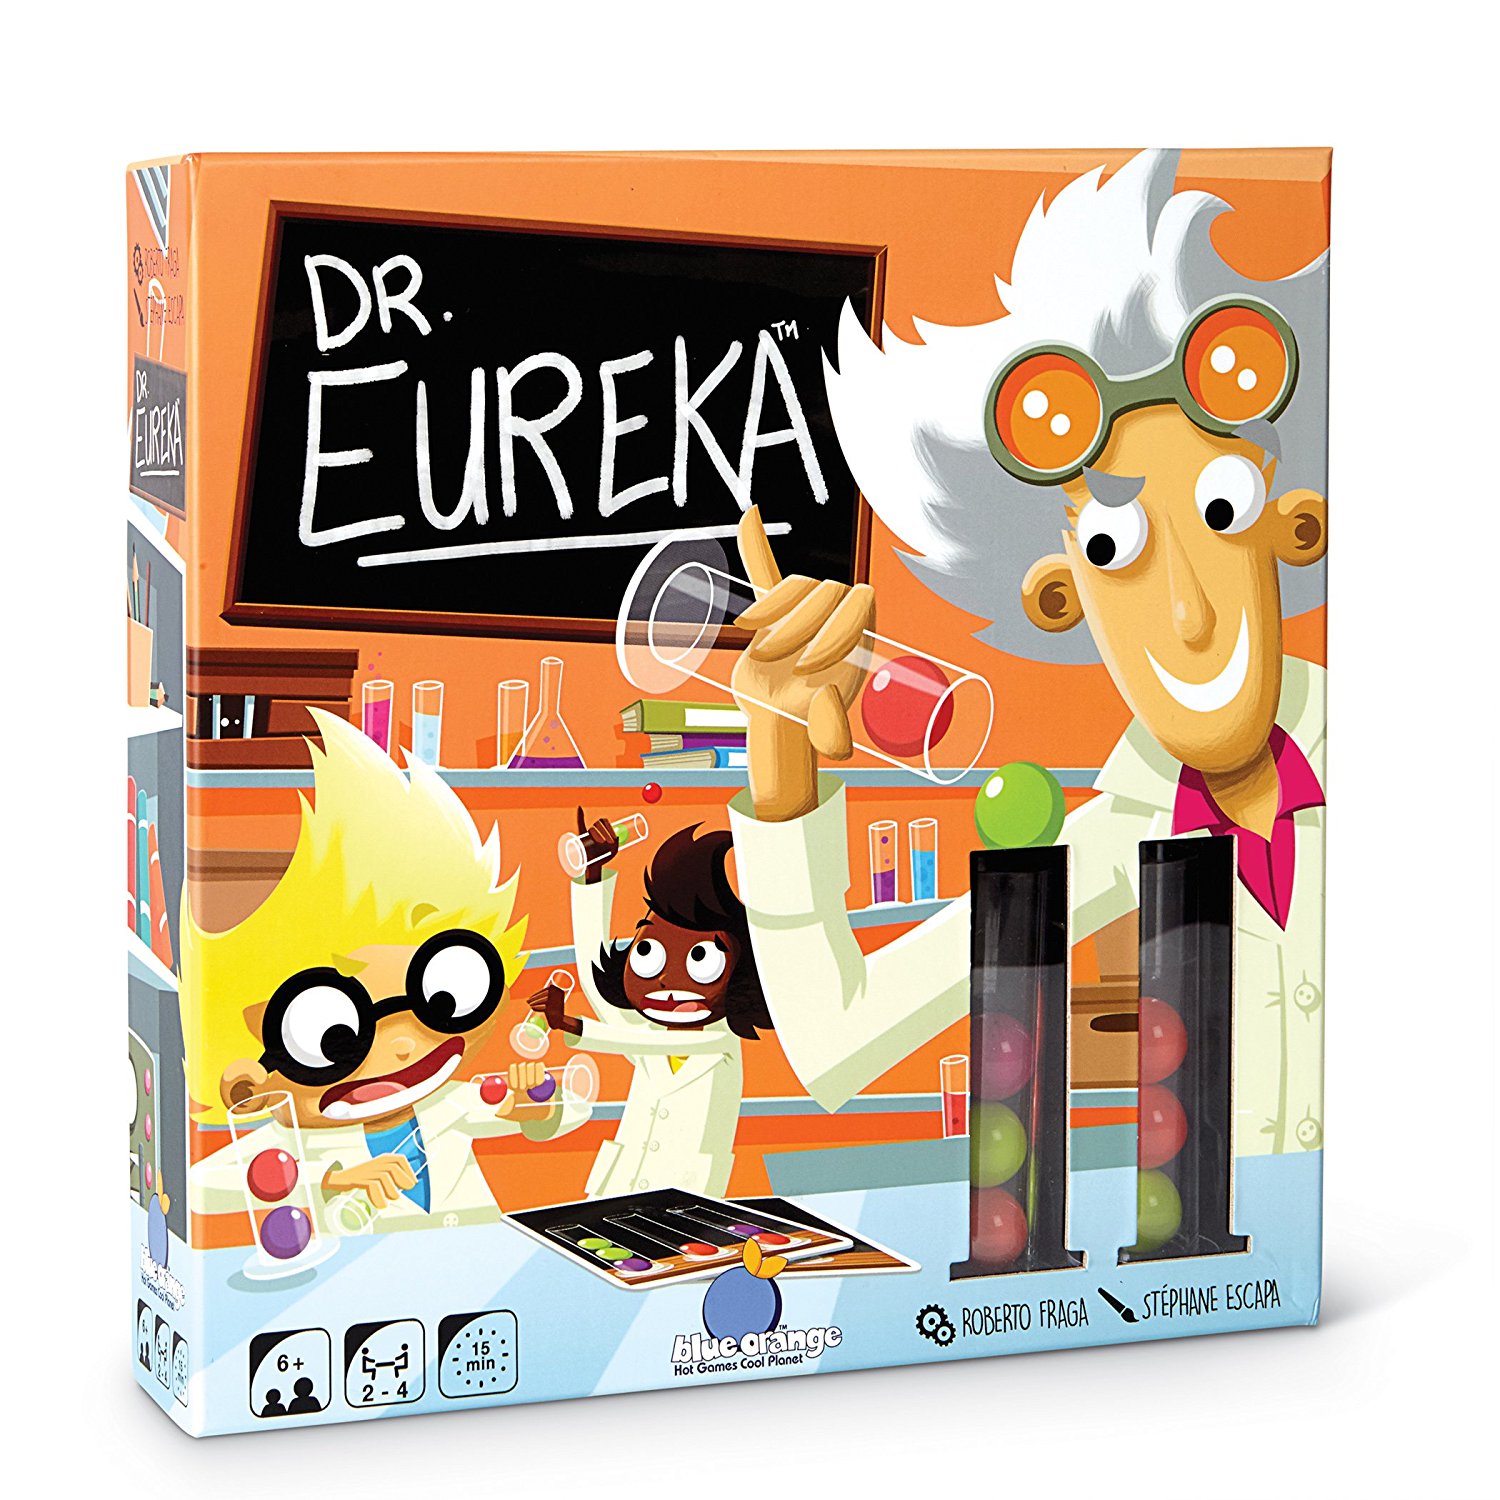 Dr Eureka Speed Logic Game Only $10.99!